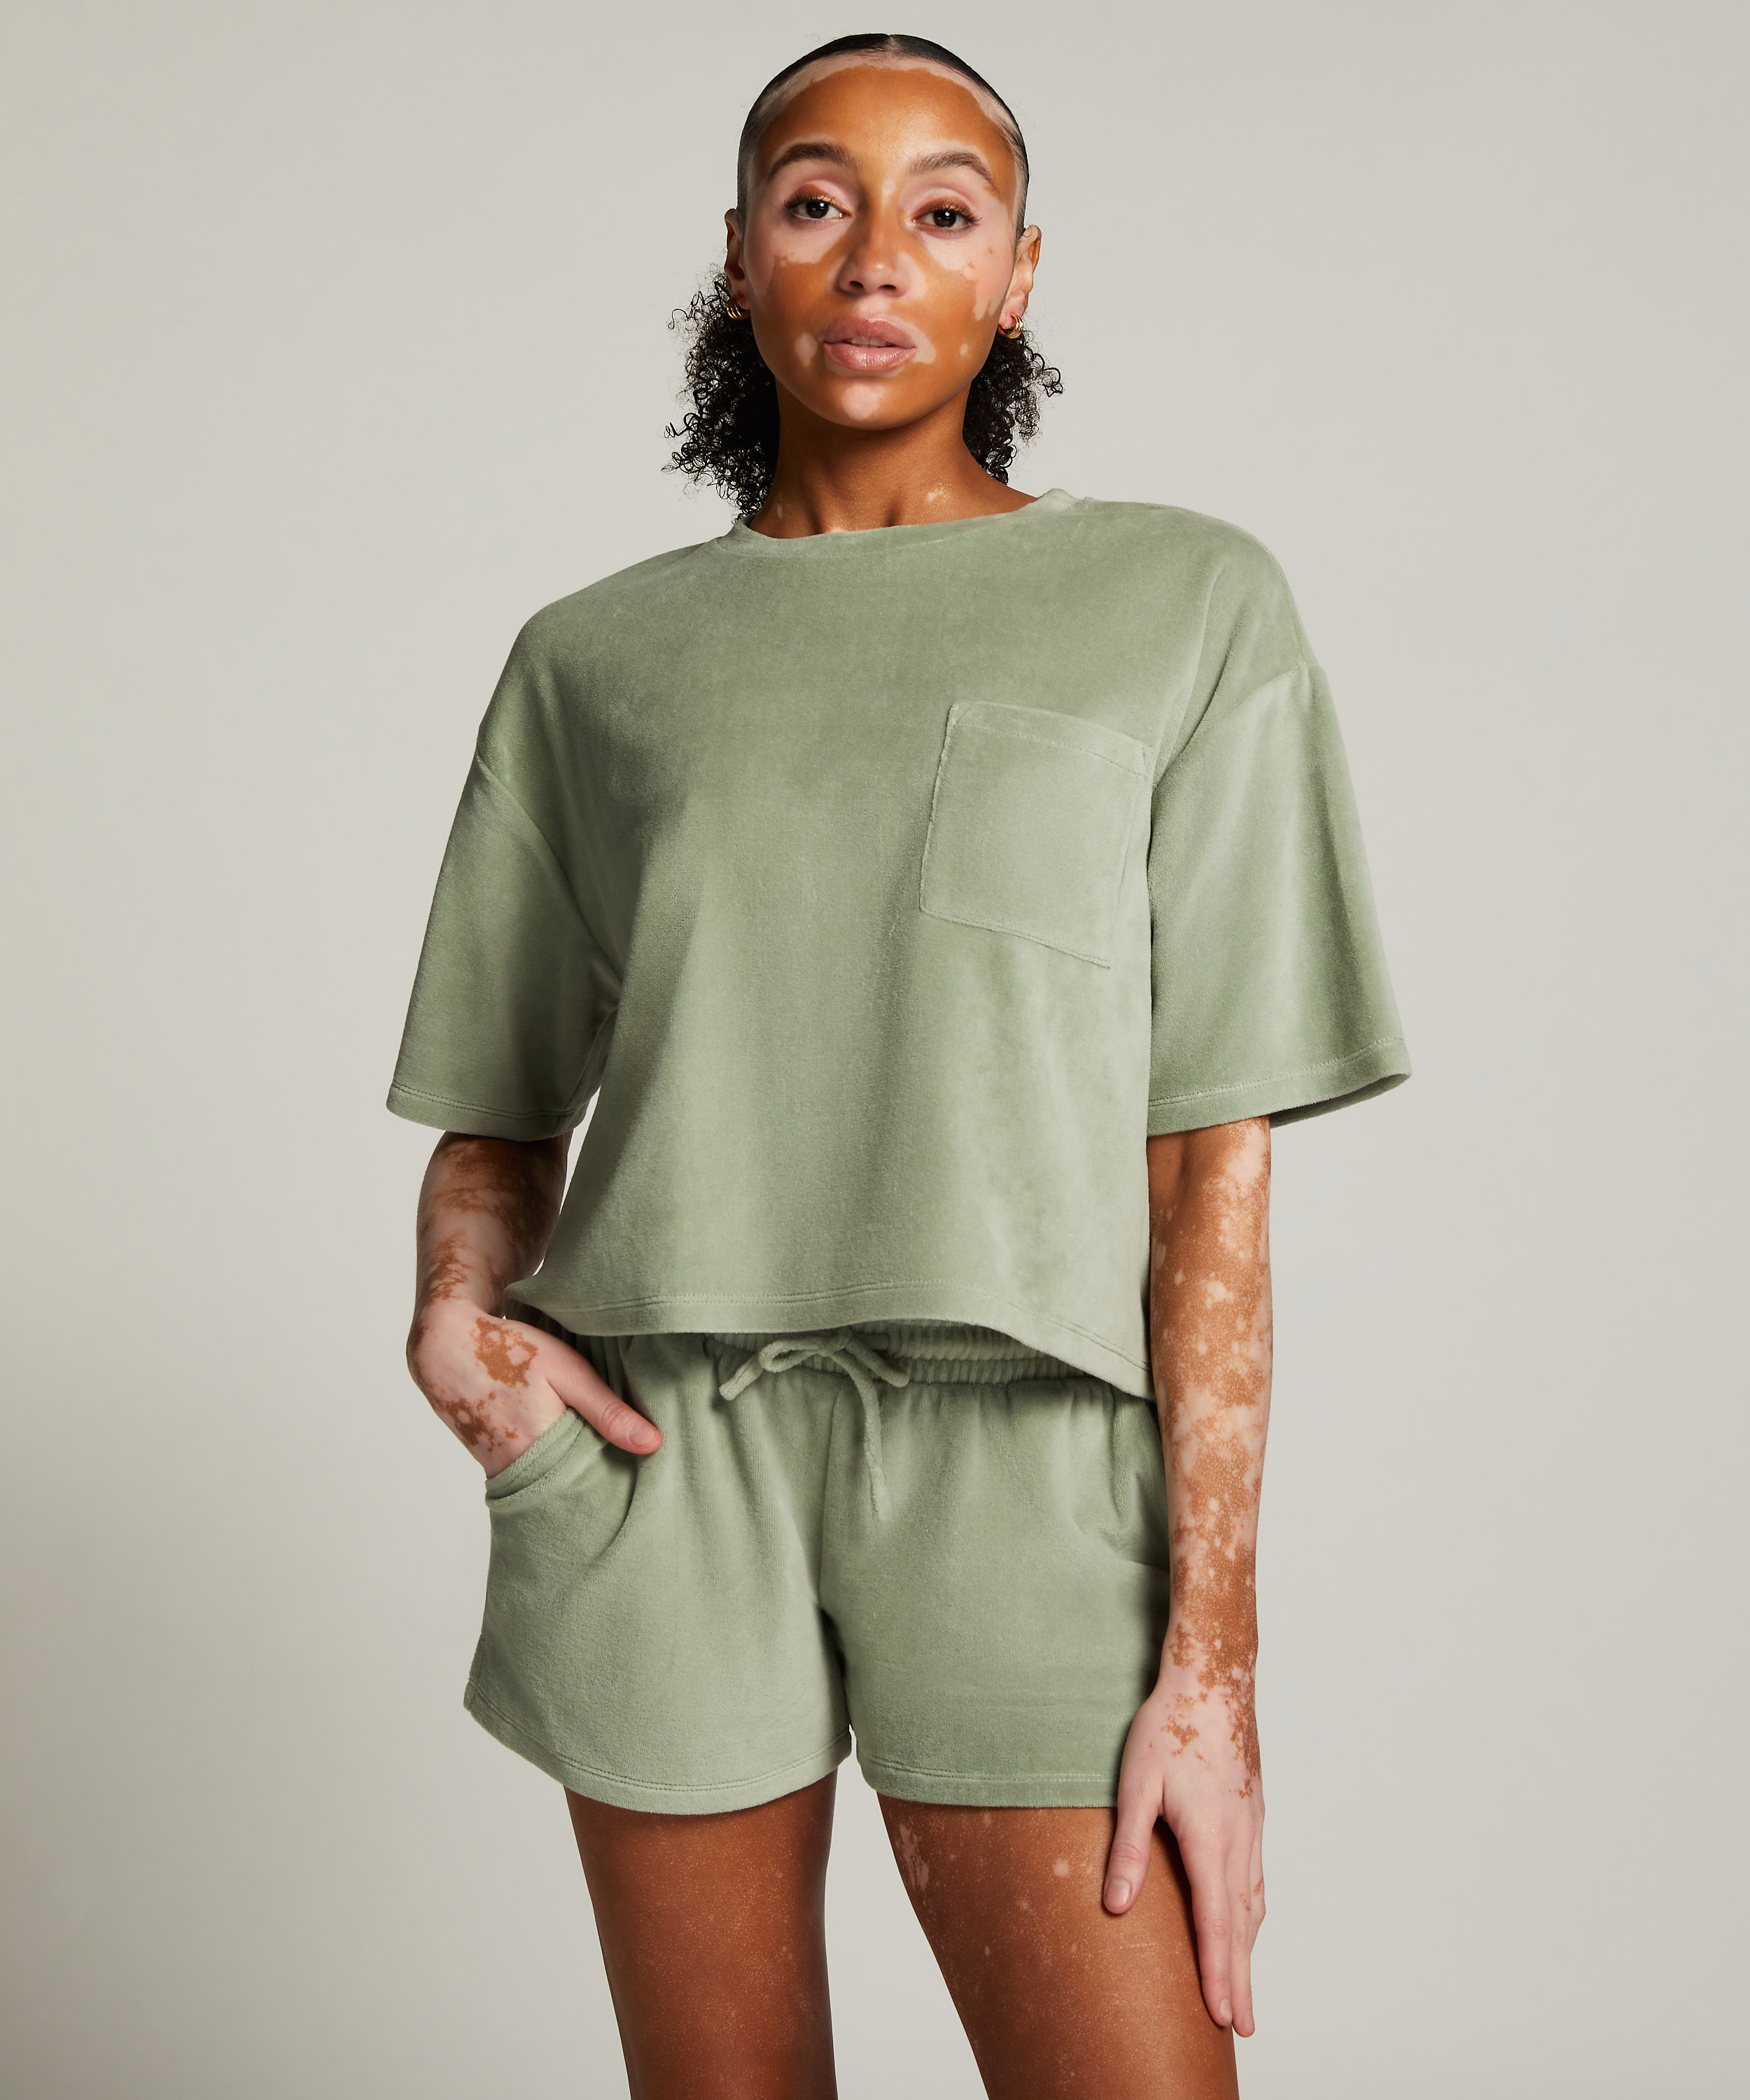 Velvet Pocket shorts, Green, main